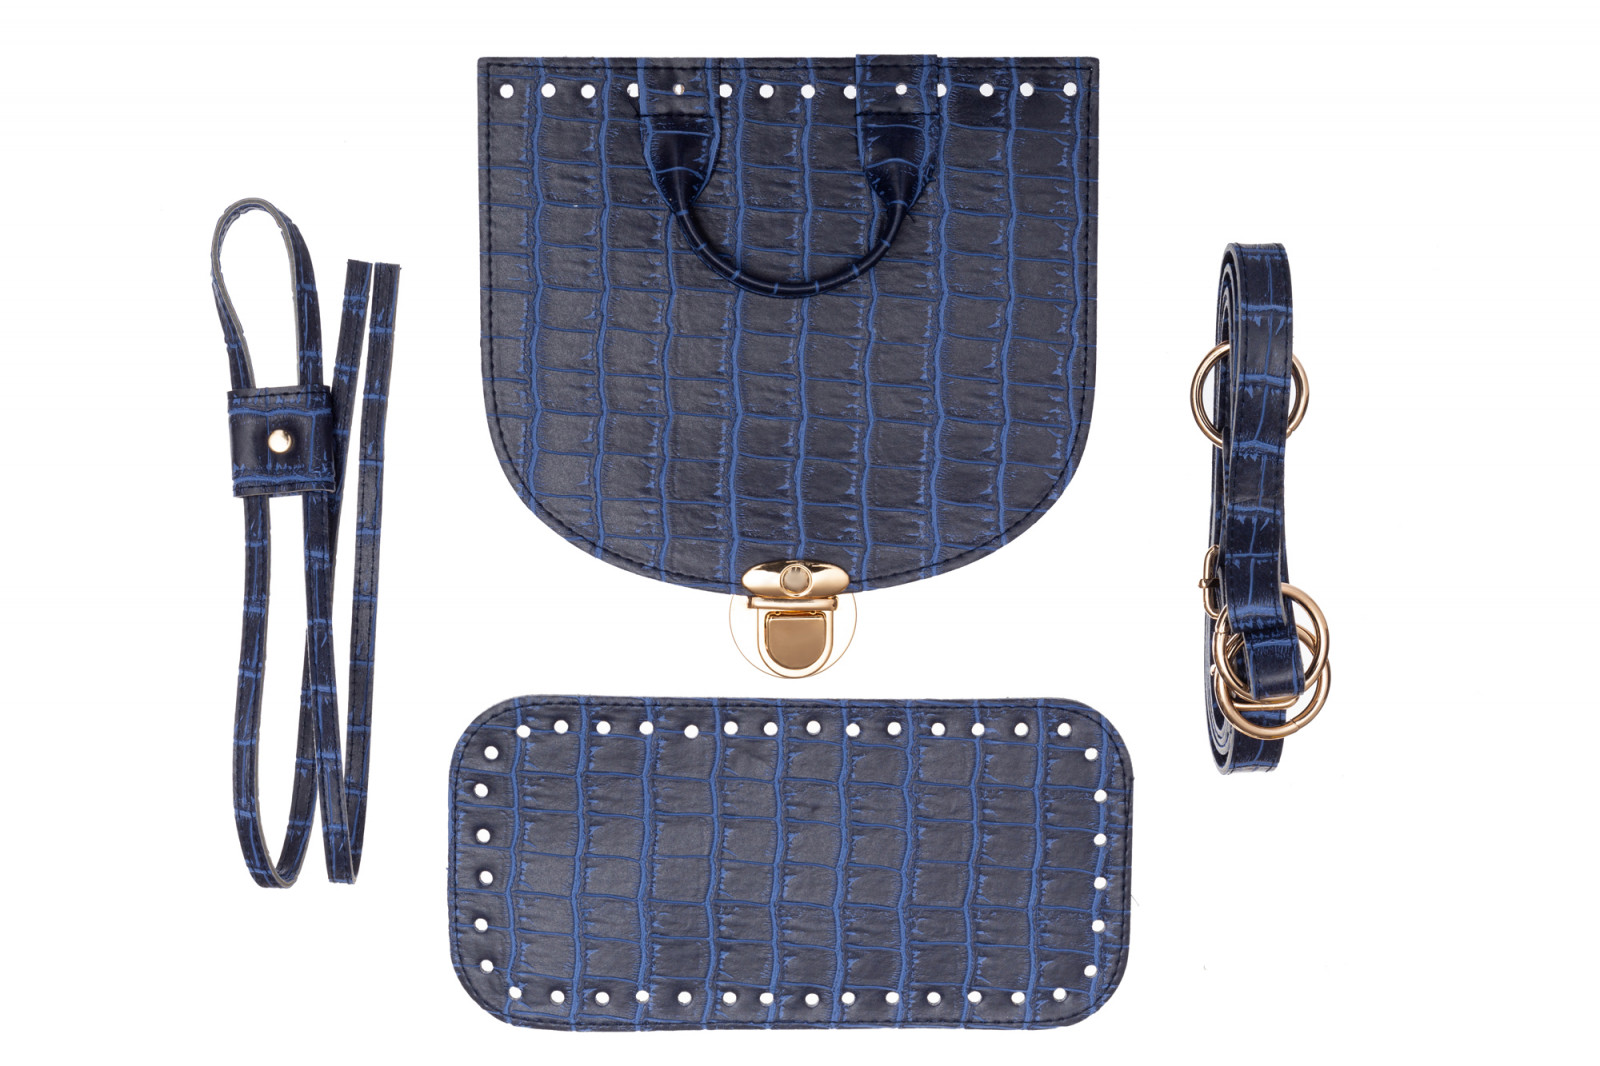 Набор для рюкзака из экокожи Крокодил, цвет Синий (5 позиций) фурнитура цвета золото 73214 ТрК